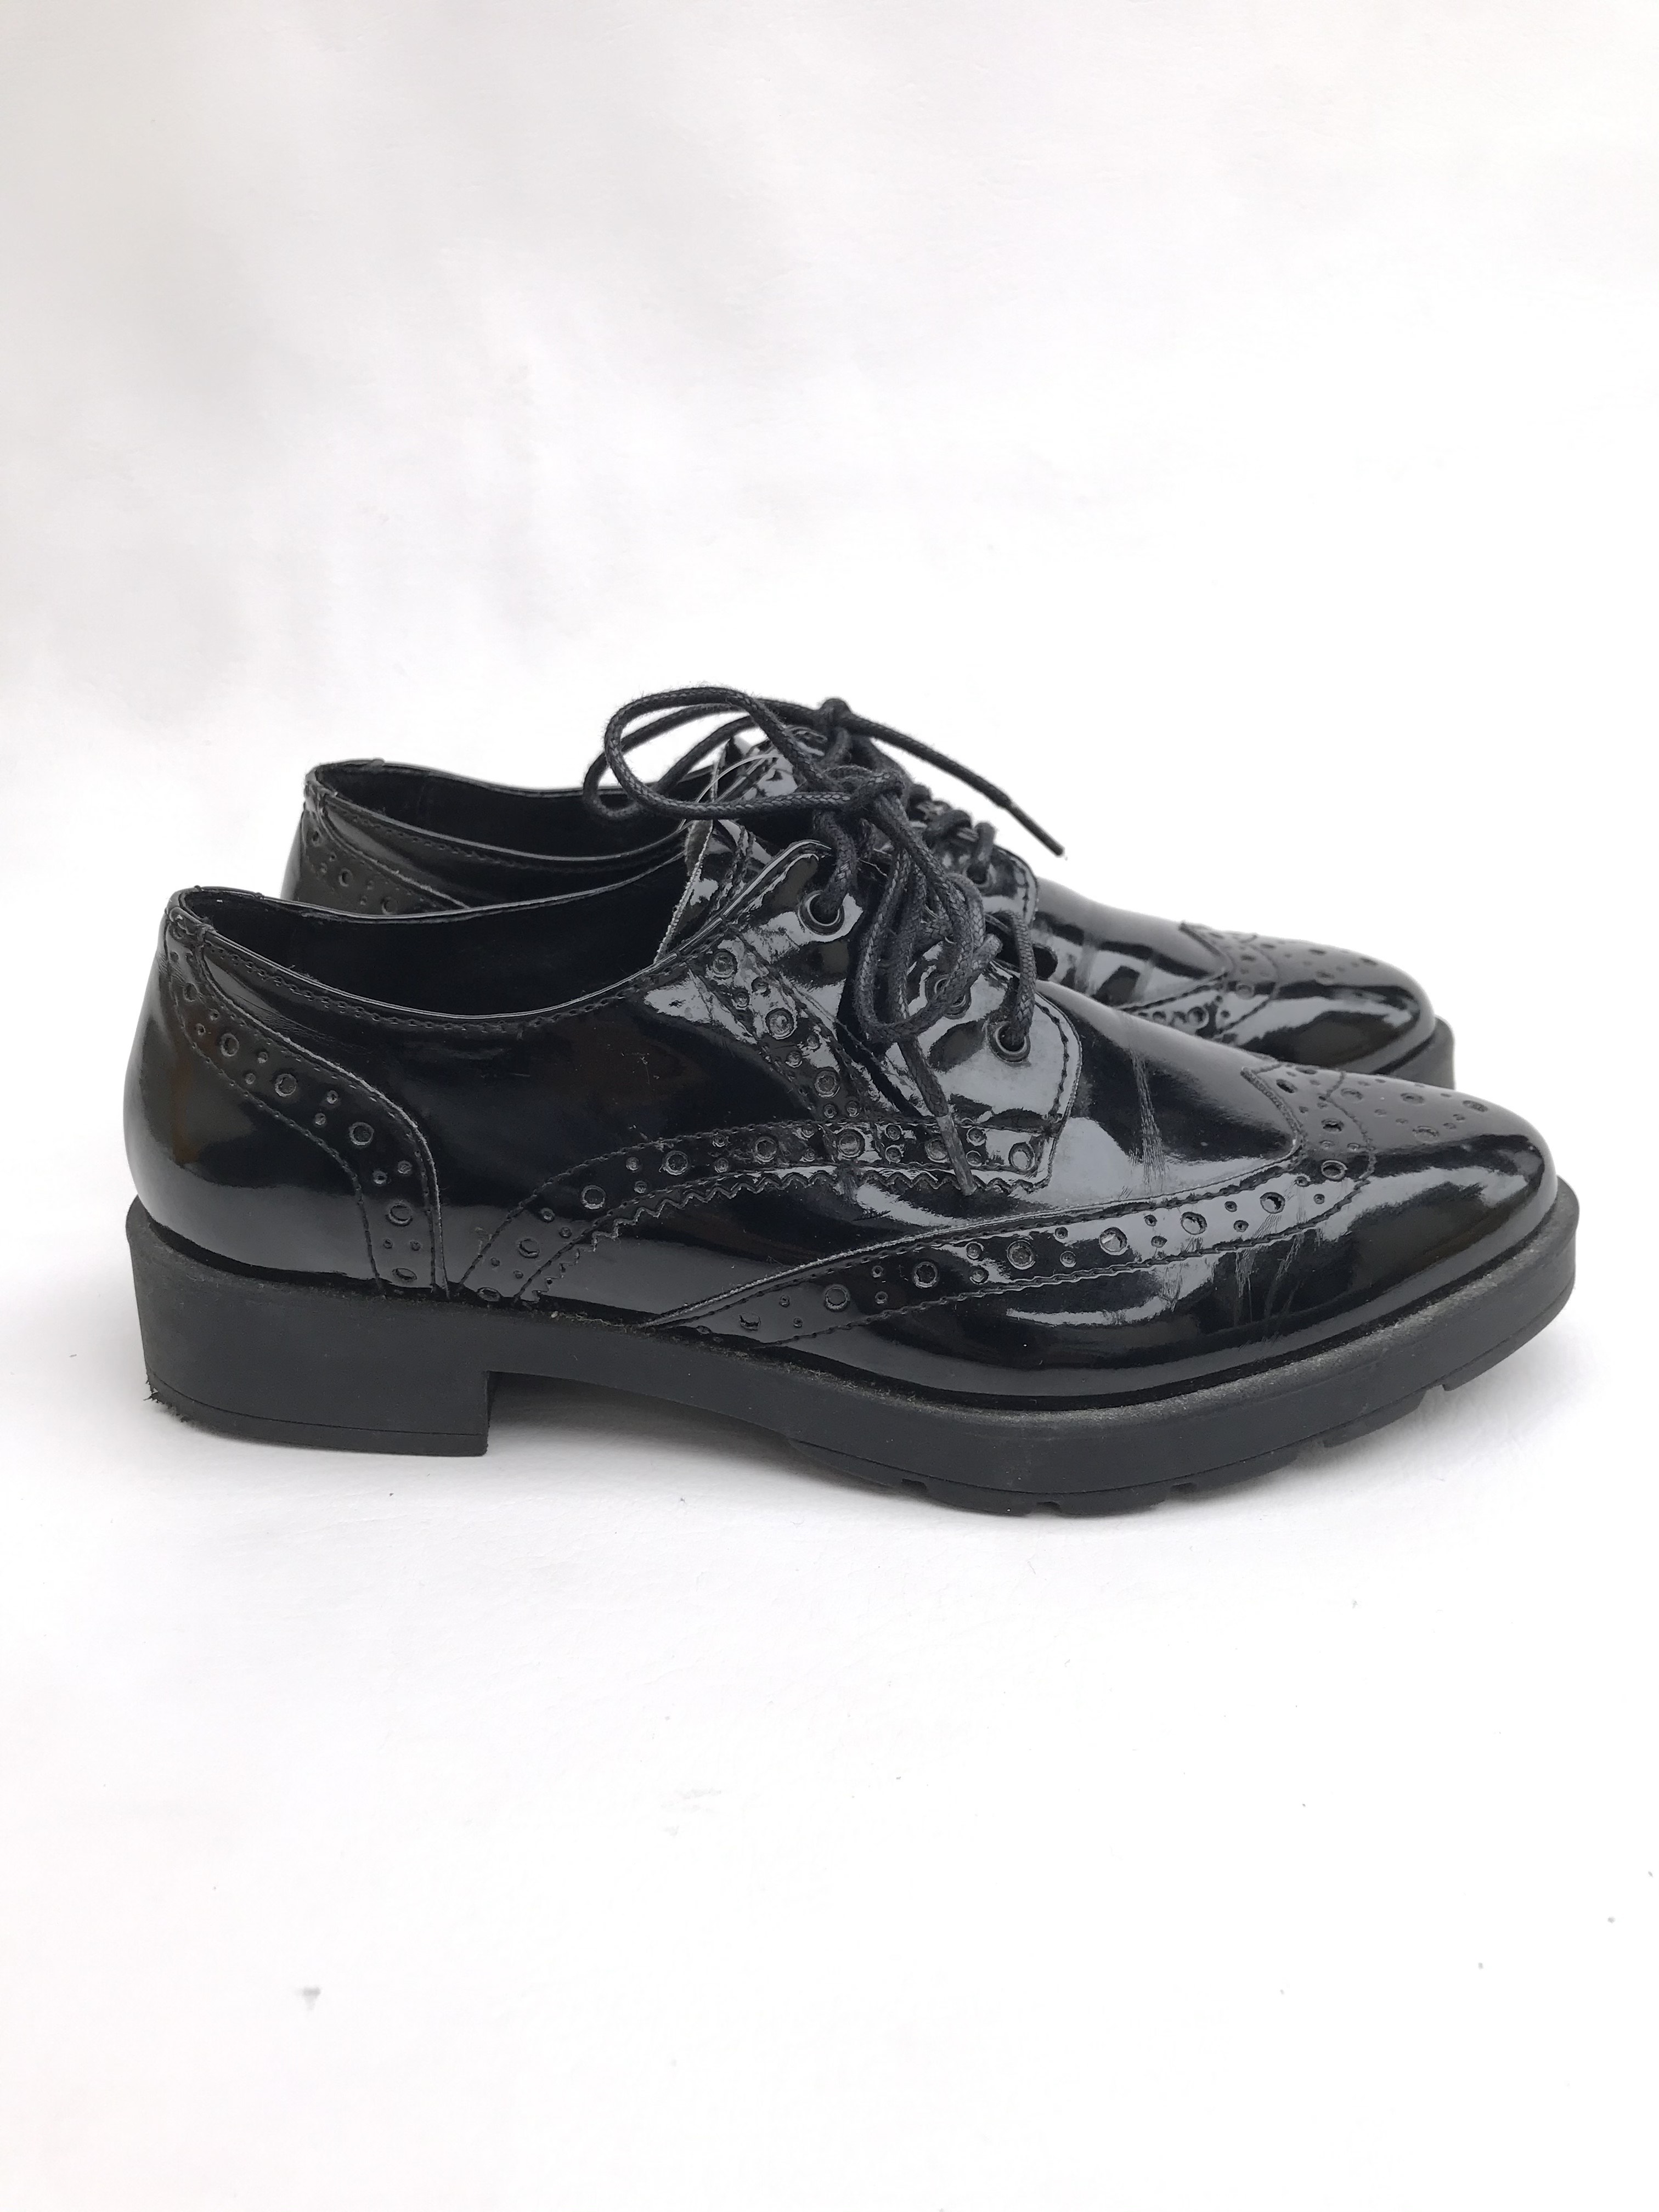 Zapatos Aldo modelo oxford negros de charol, taco Estado 7/10 Precio original S/ 230 Las Traperas